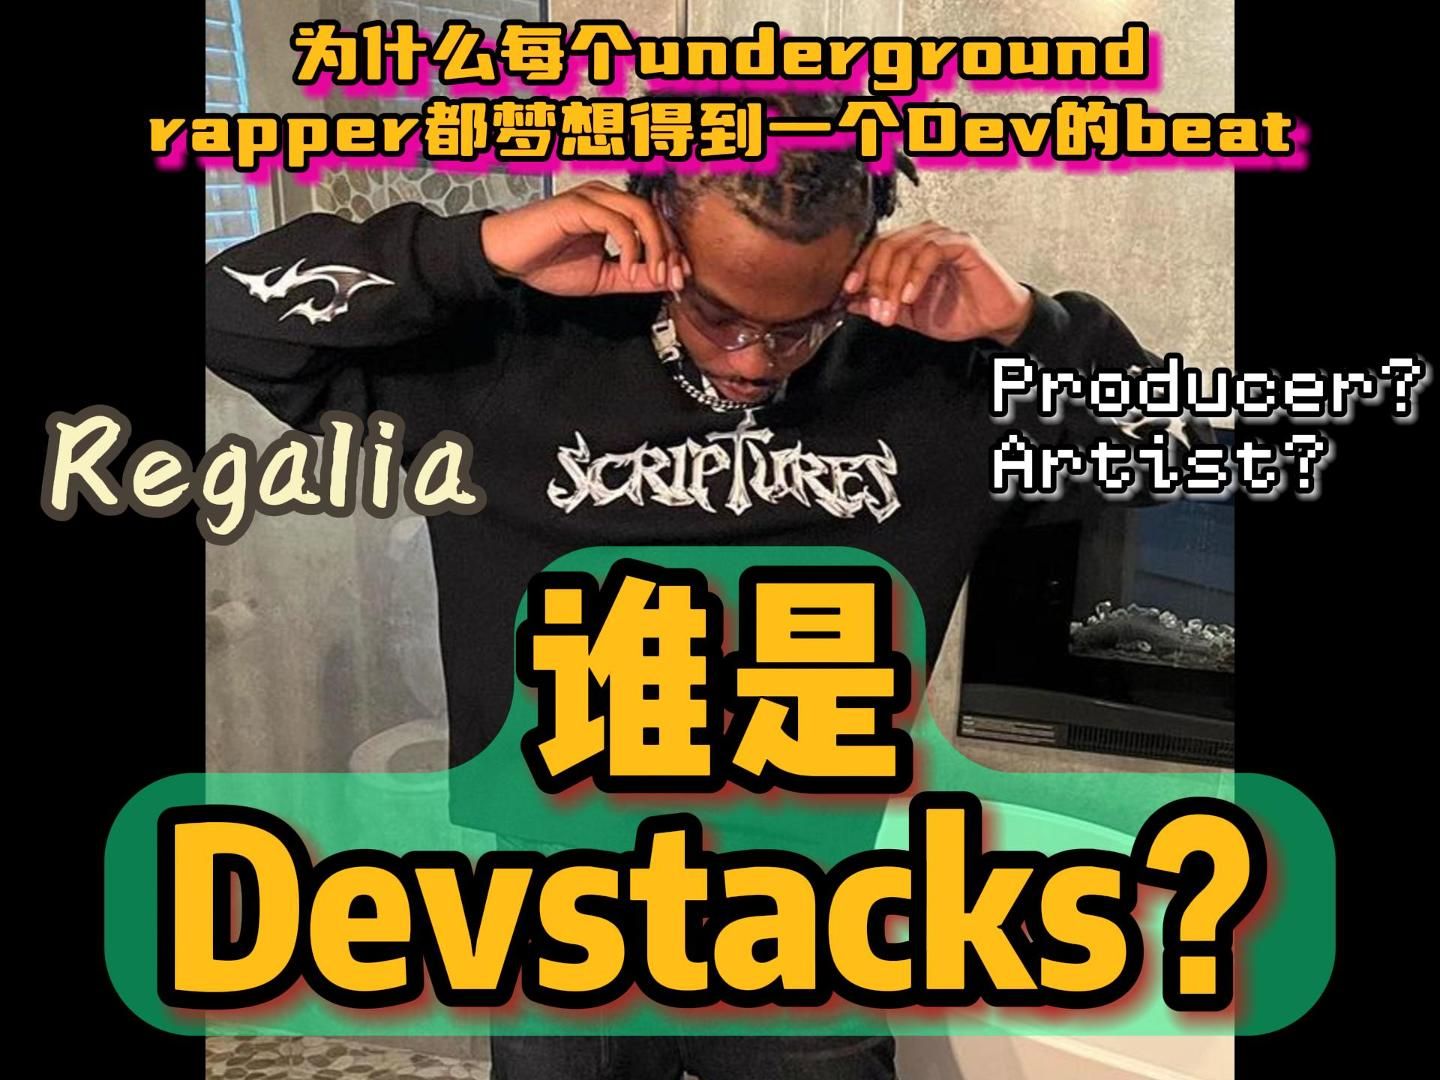 为什么每个地下rapper都想要Devstacks的伴奏？